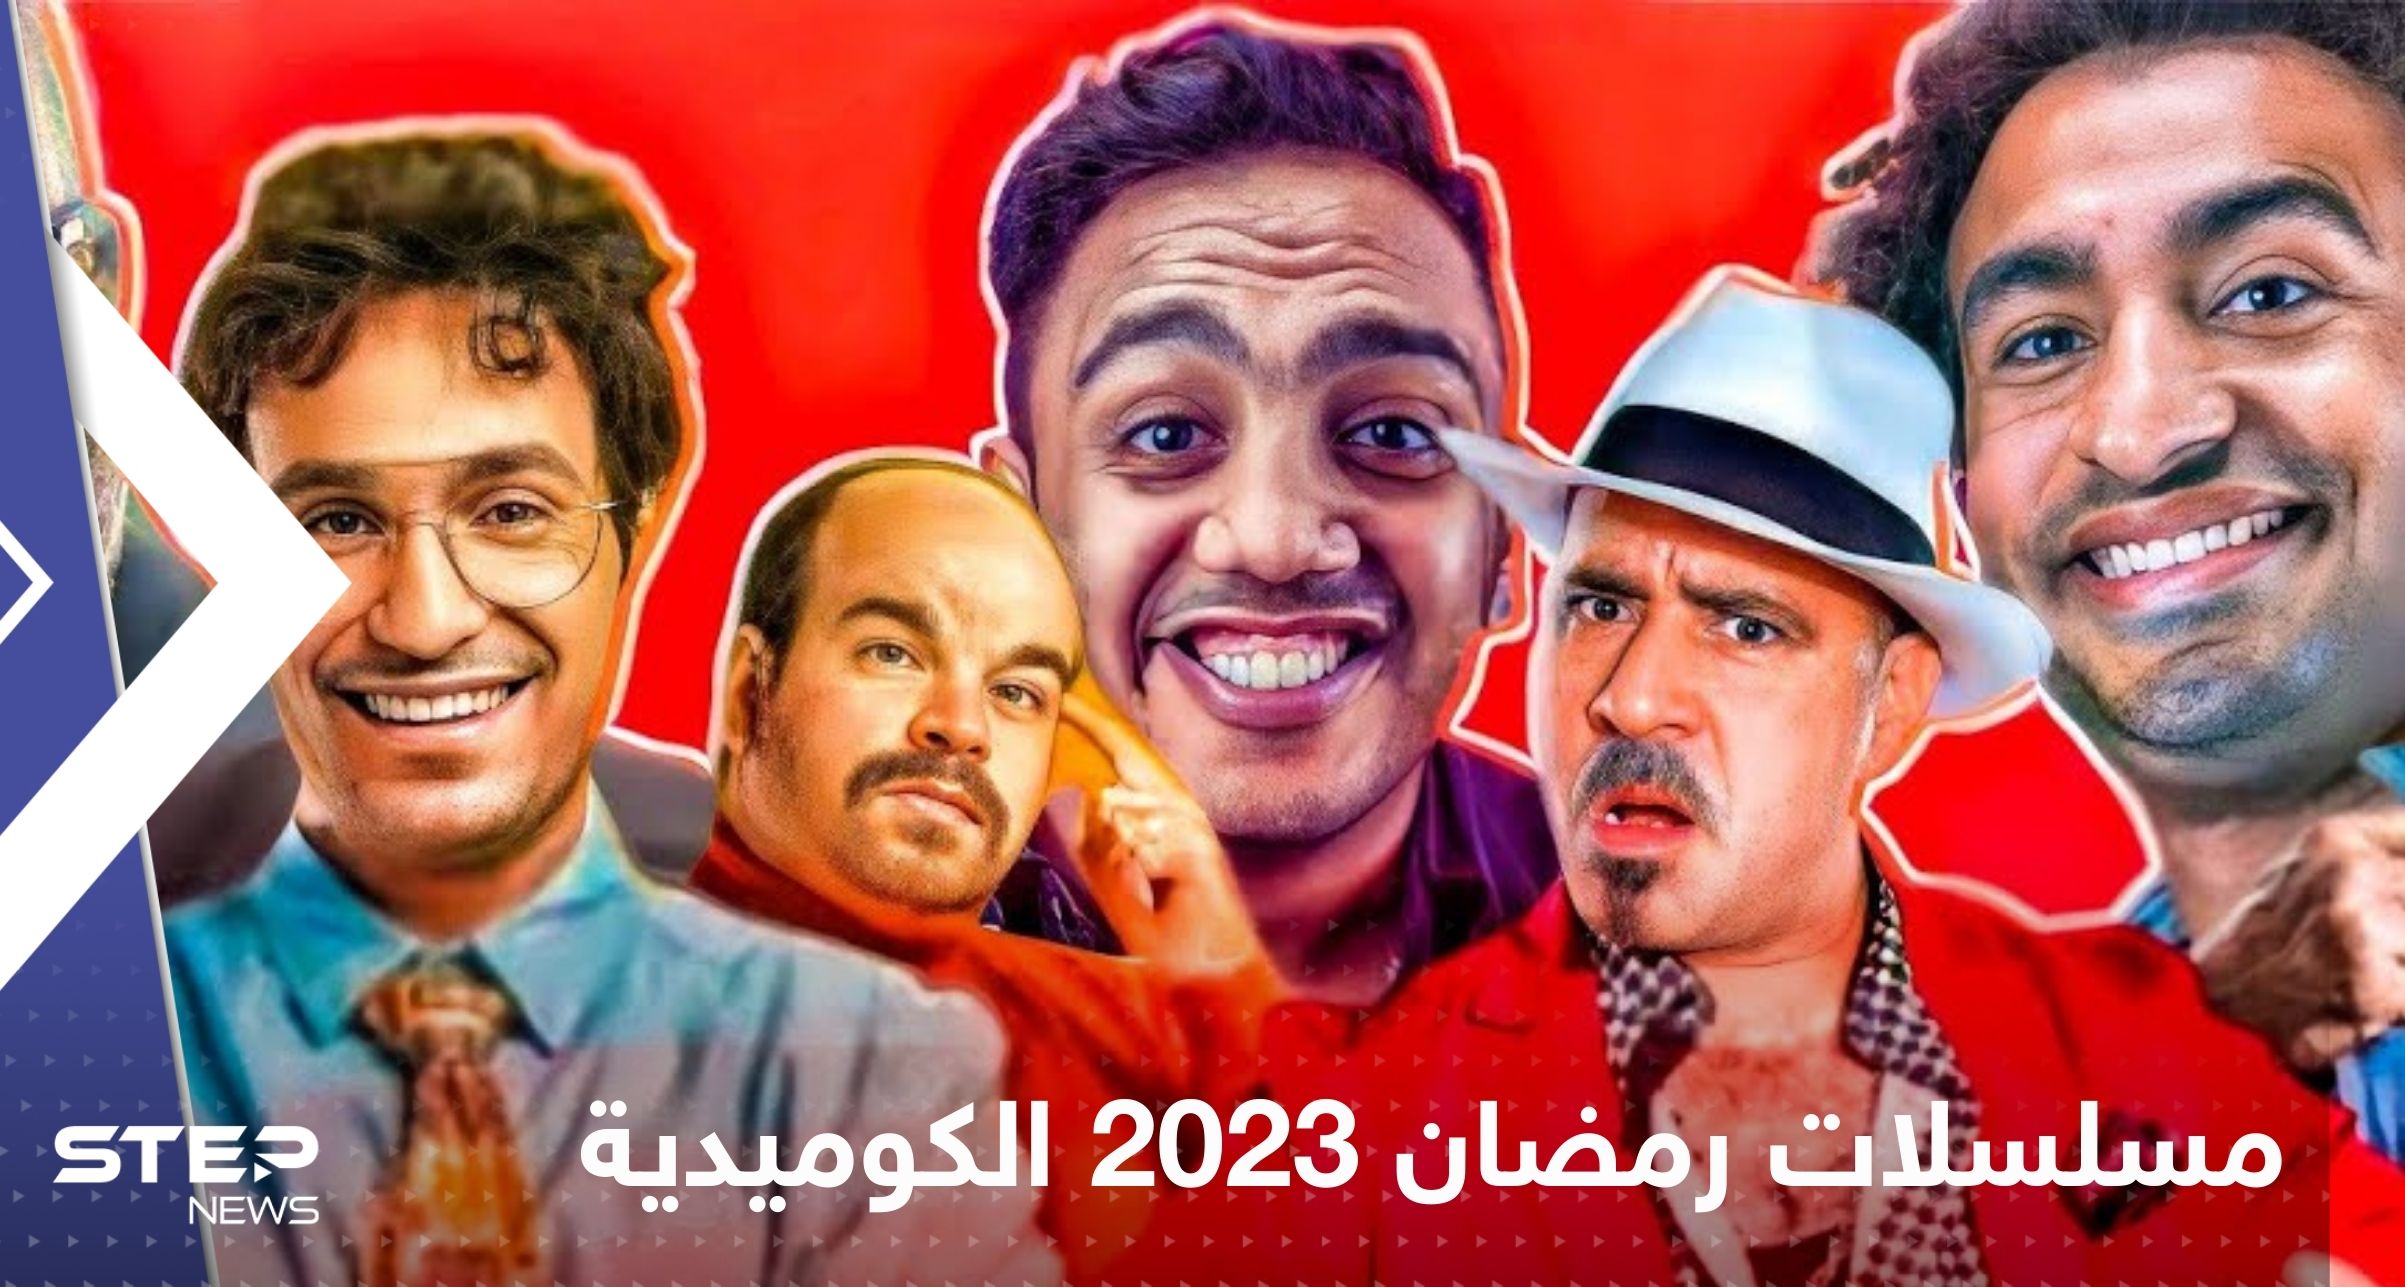 مسلسلات رمضان 2023 الكوميدية .. ابتسم بعد عناء الصيام